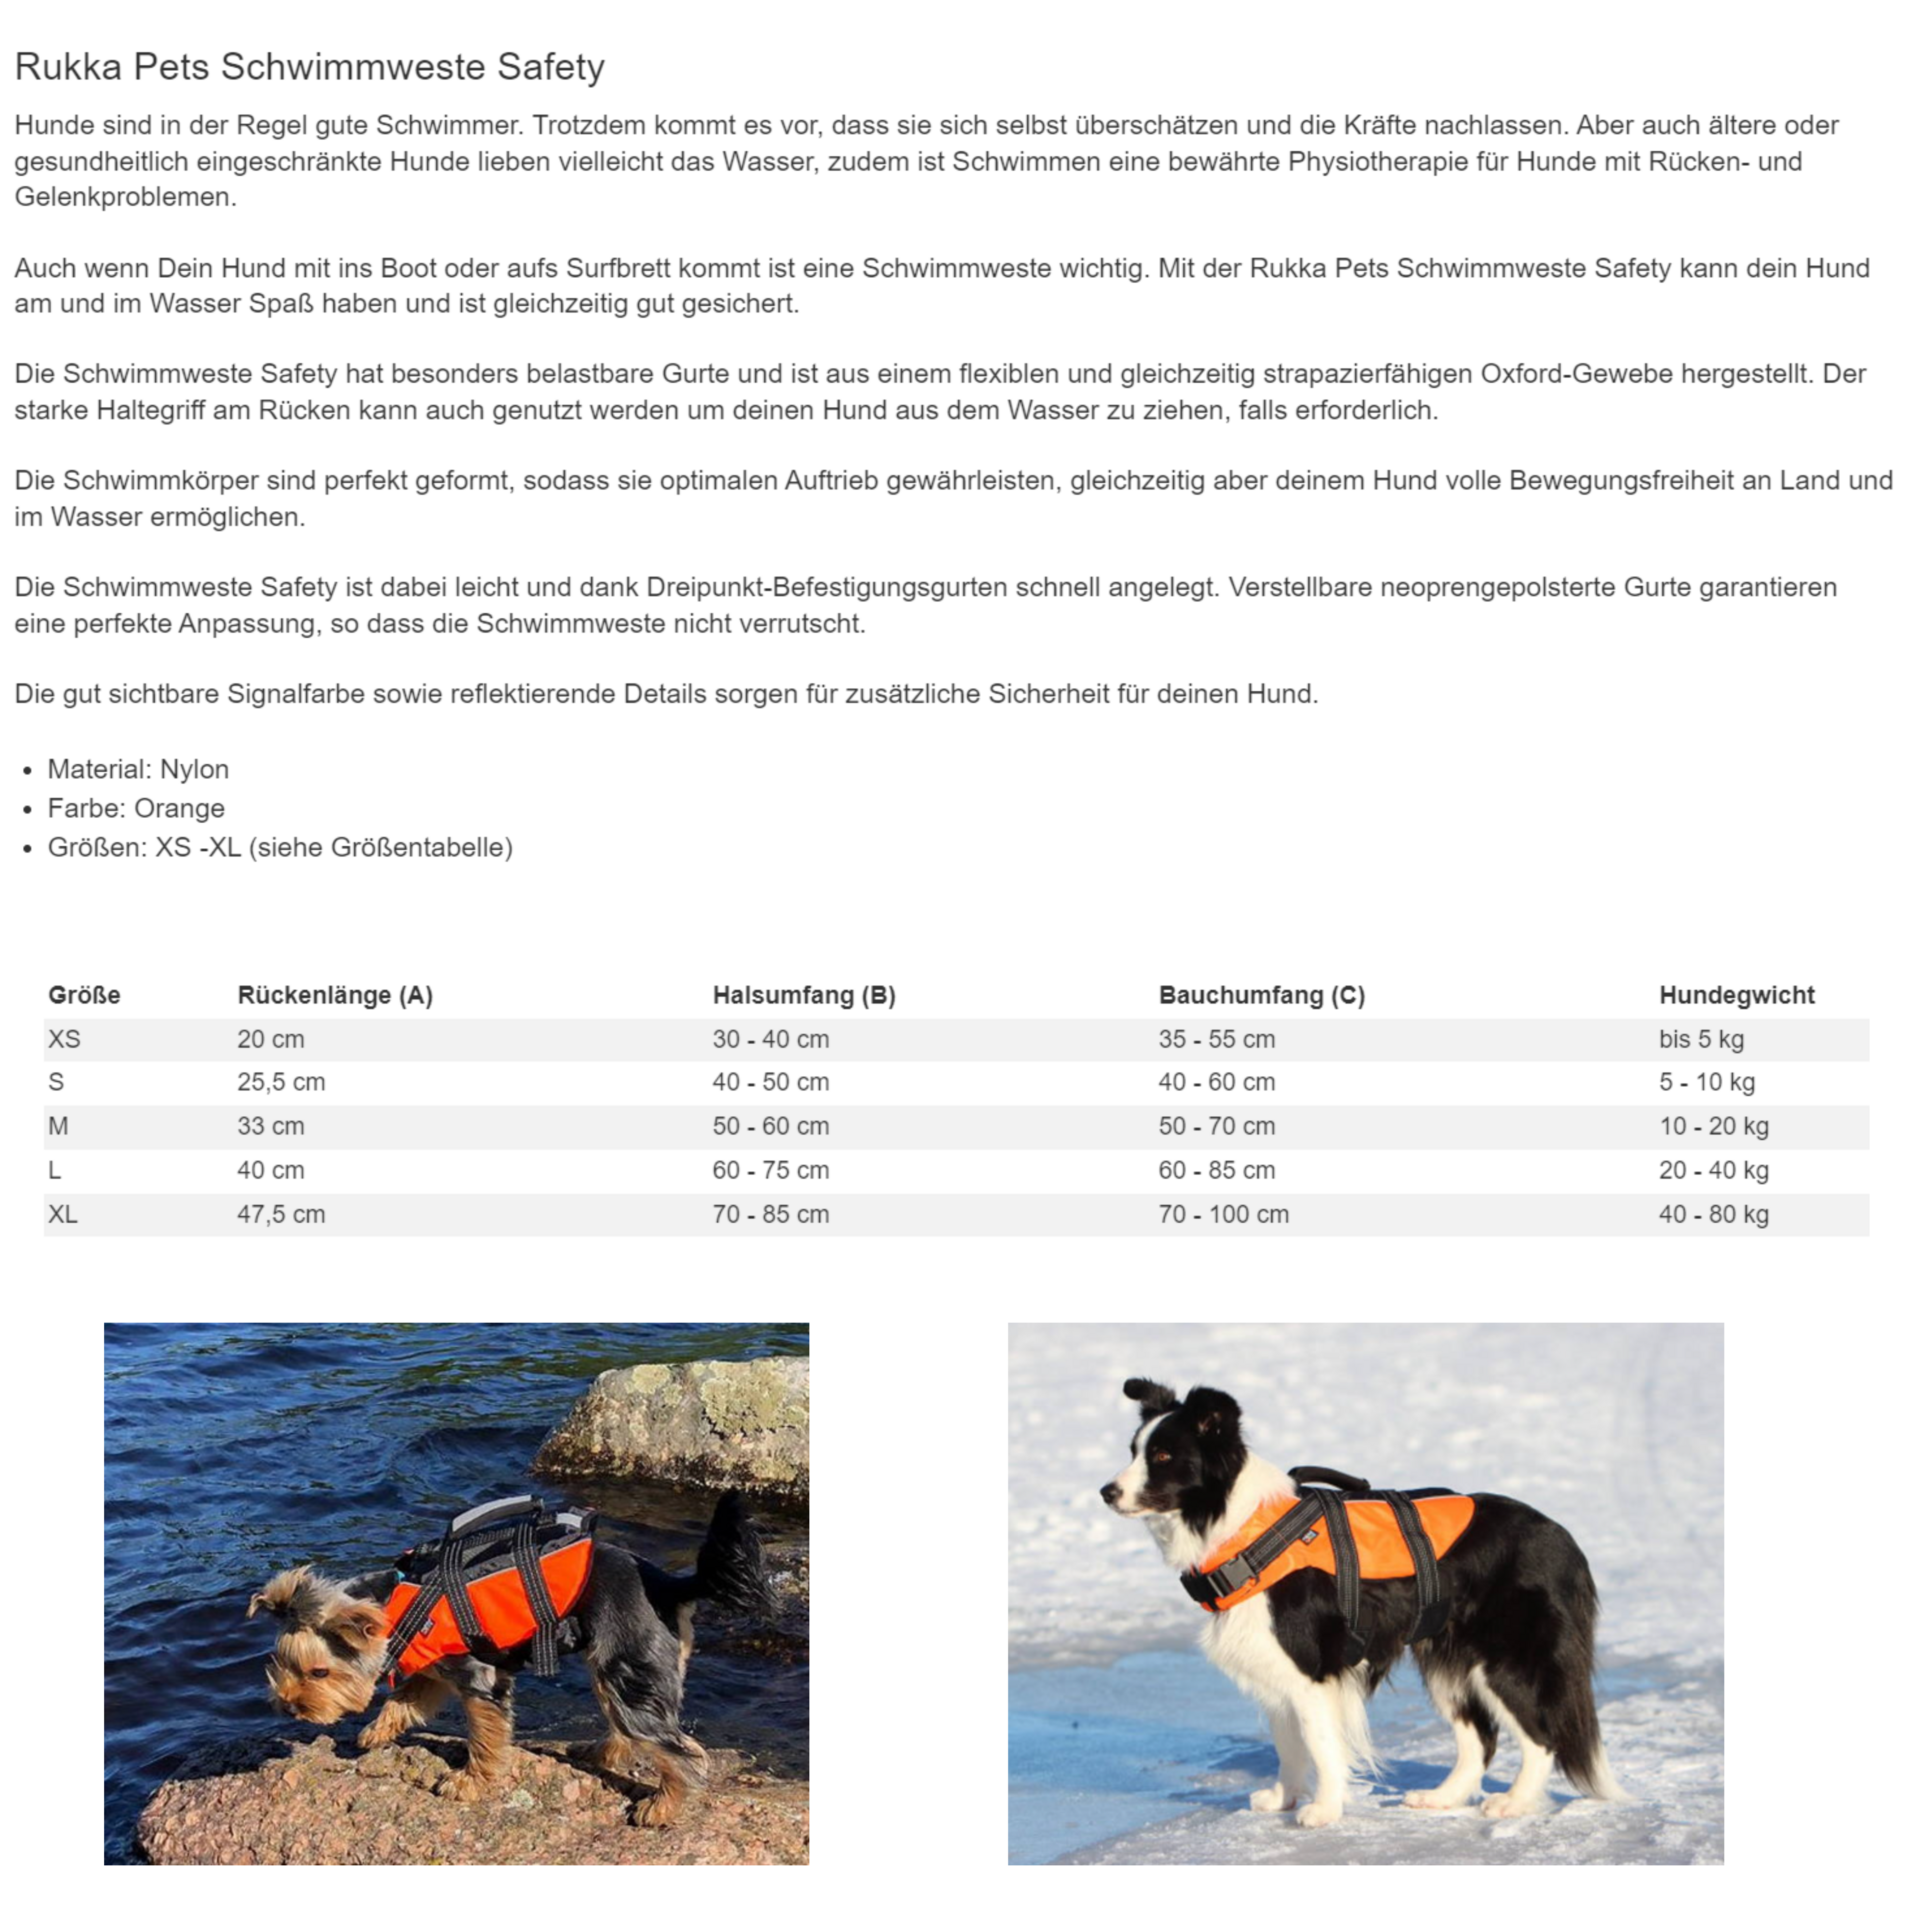 Rukka Pets Schwimmweste - Beschreibung